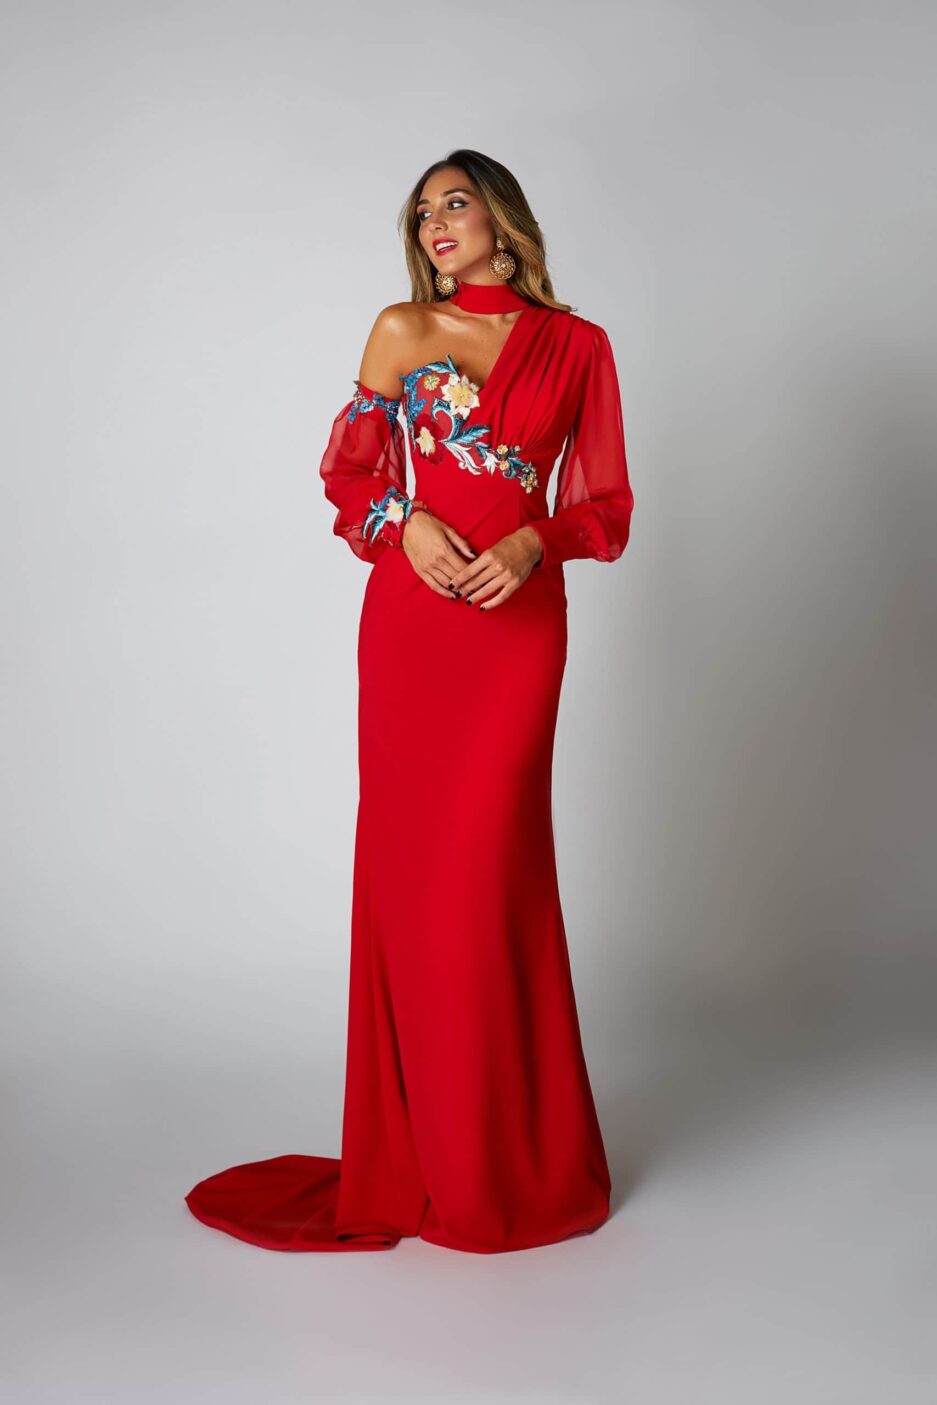 Chica posando con un vestido rojo asimétrico.